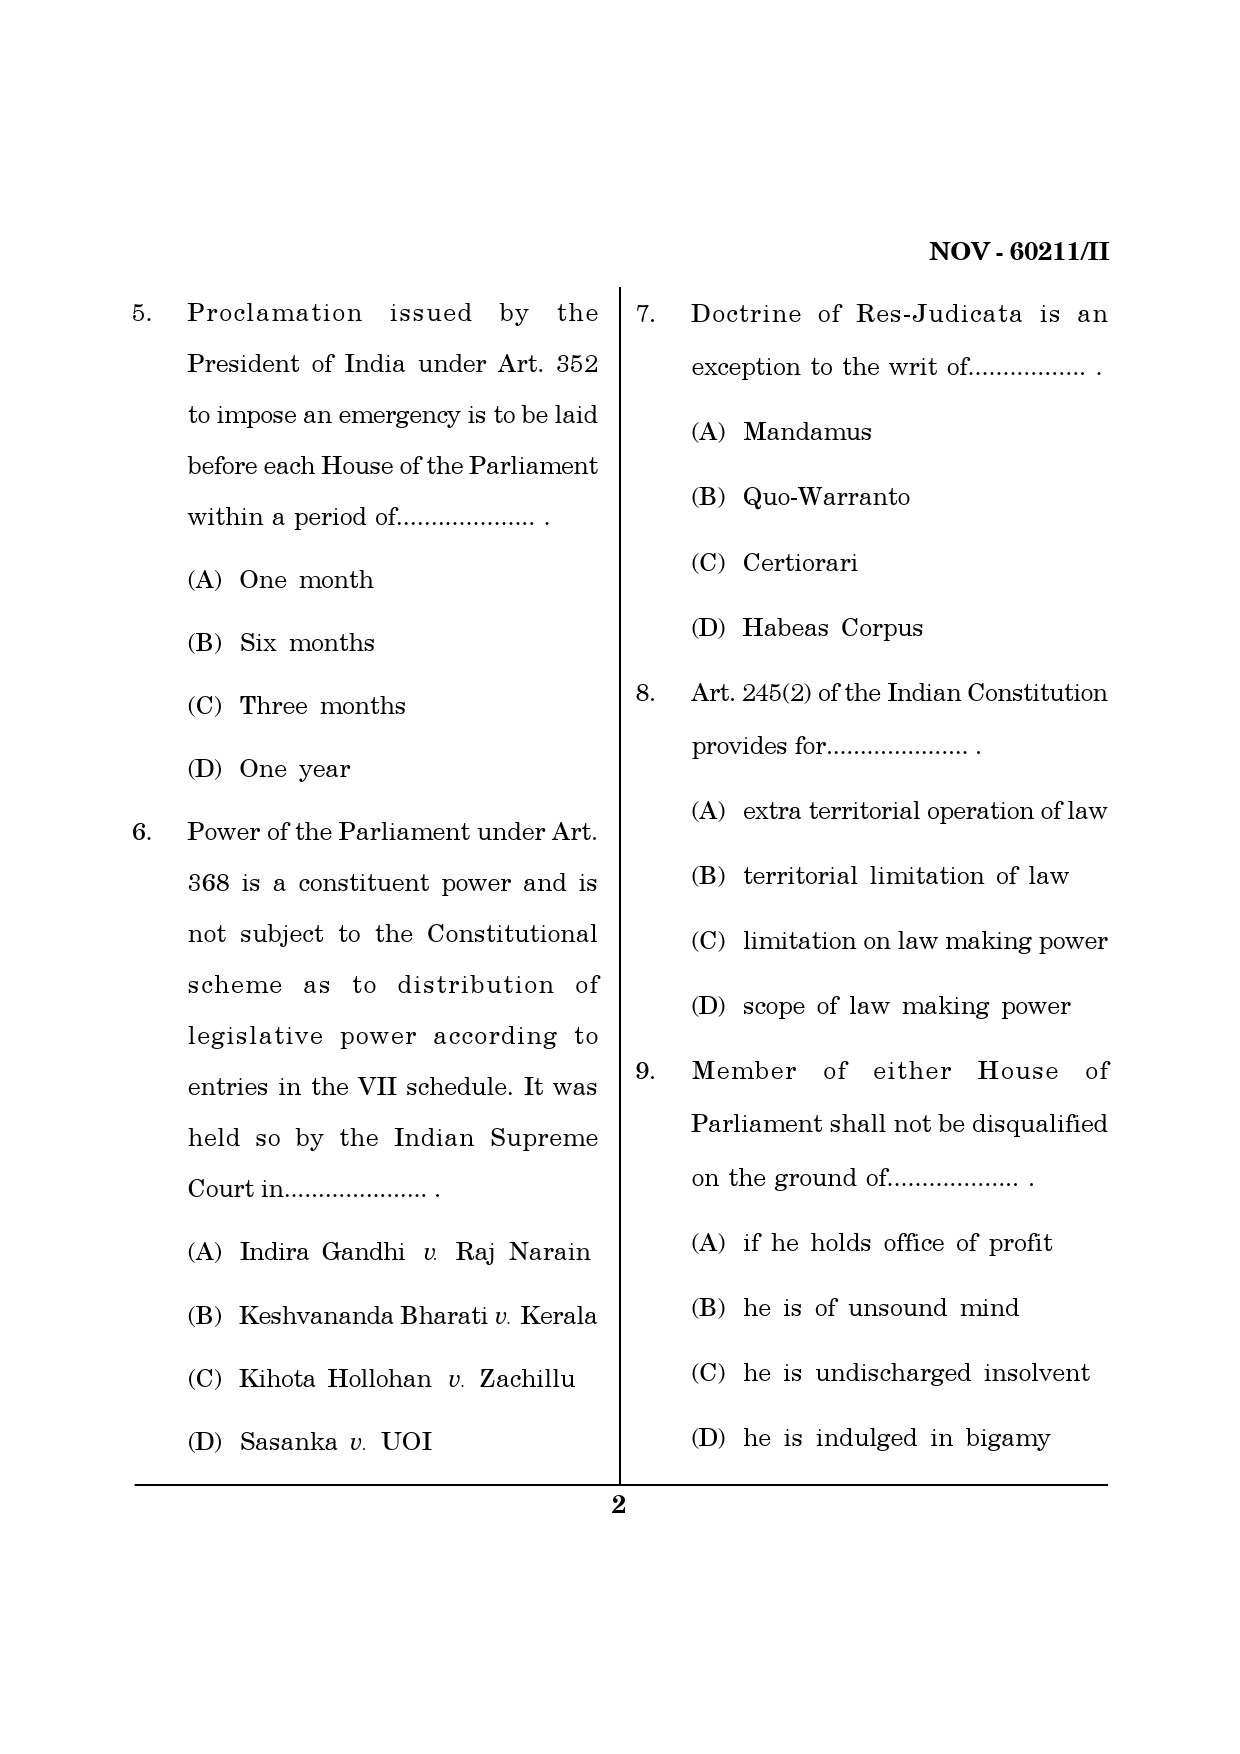 Maharashtra SET Law Question Paper II November 2011 2